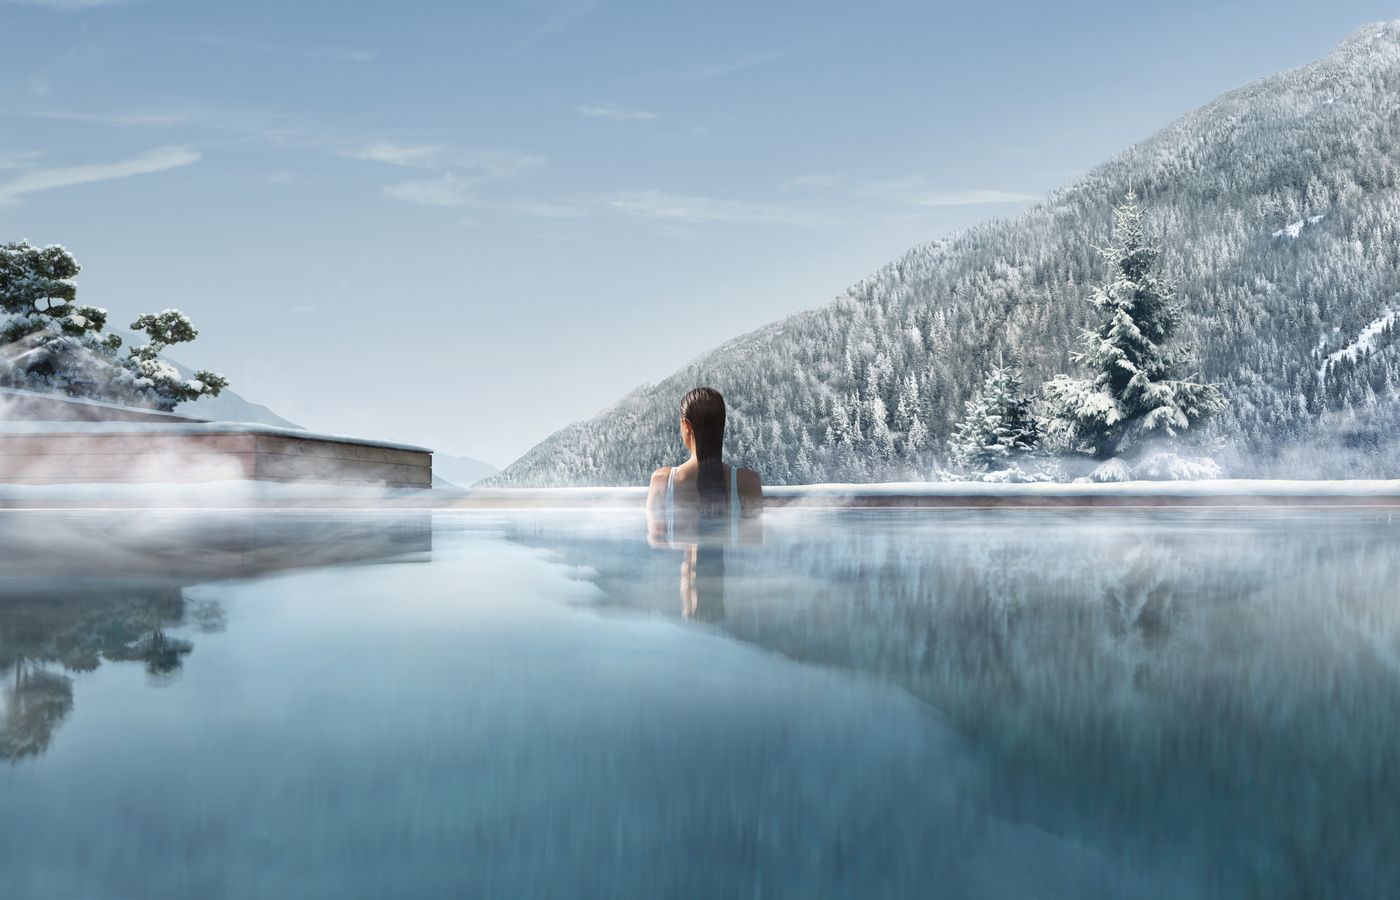 Trip Burgenland - FitReisen - Lefay Resort & Spa Dolomiti in Pinzolo buche jetzt Deinen Wellness & Beauty Urlaub im Lefay Resort & Spa Dolomiti in der Region Südtirol, in Italien günstig bei uns!